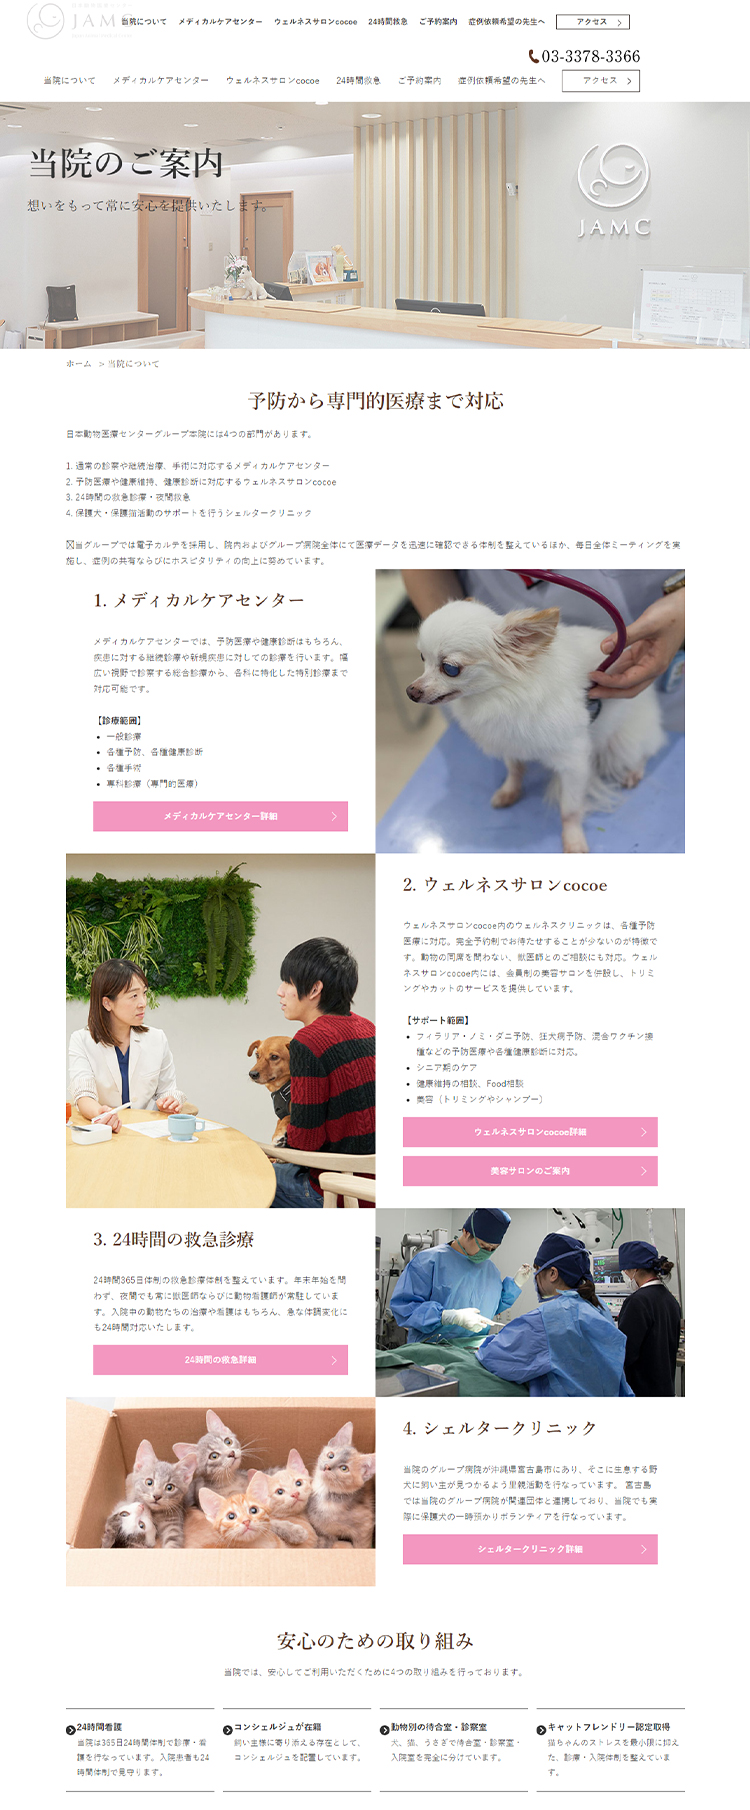 日本動物医療センターのお知らせ内容